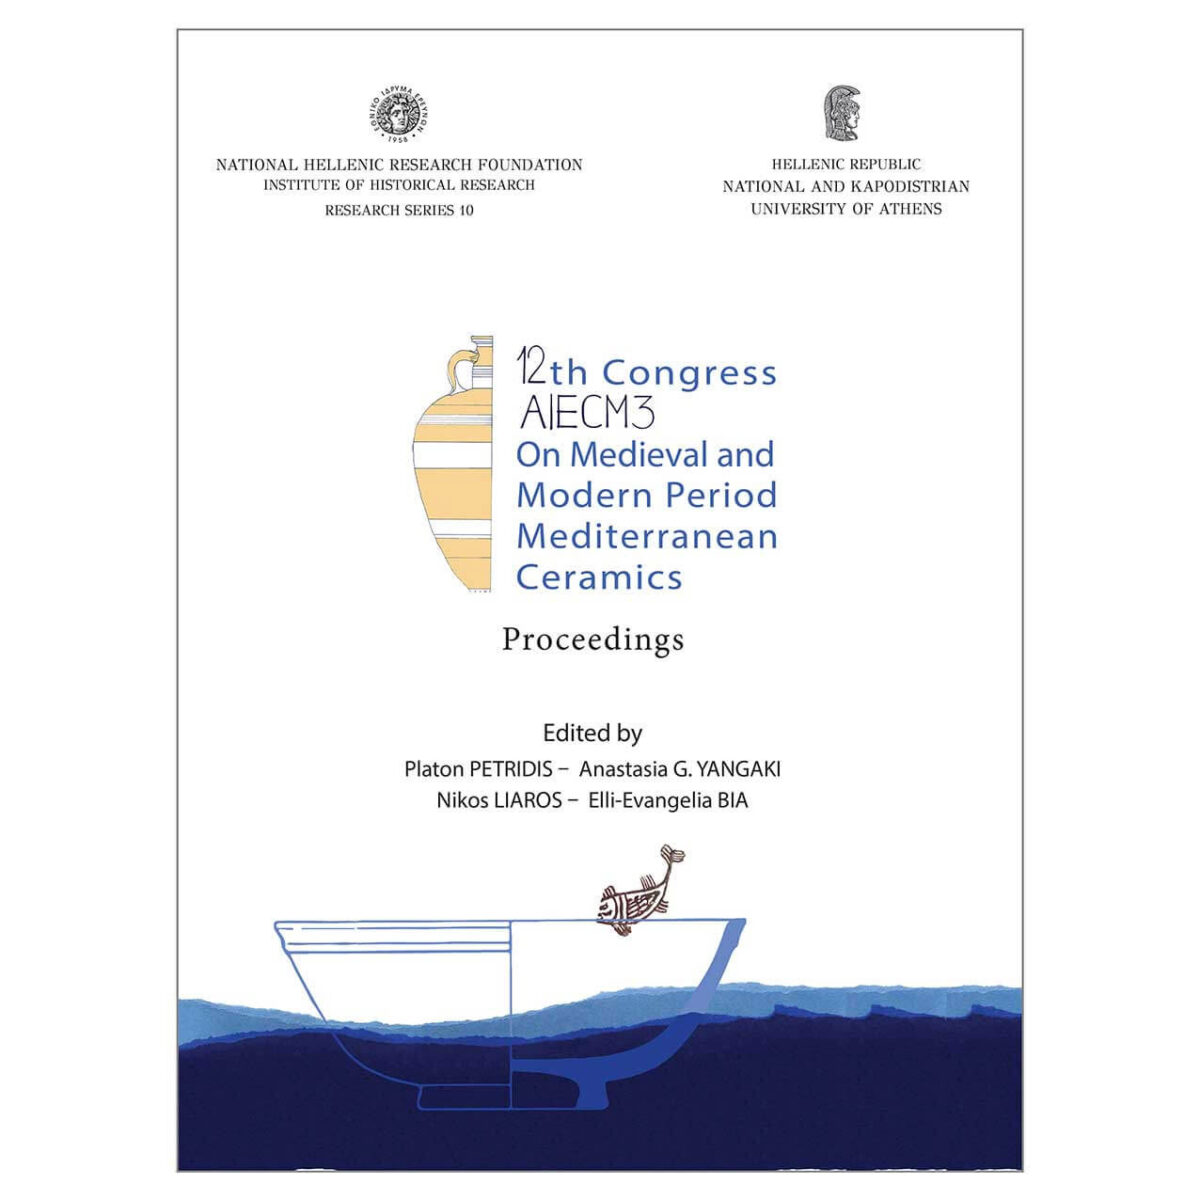 Parution des Actes du XIIe Congrès de l’AIECM3 (Athènes, 2018)